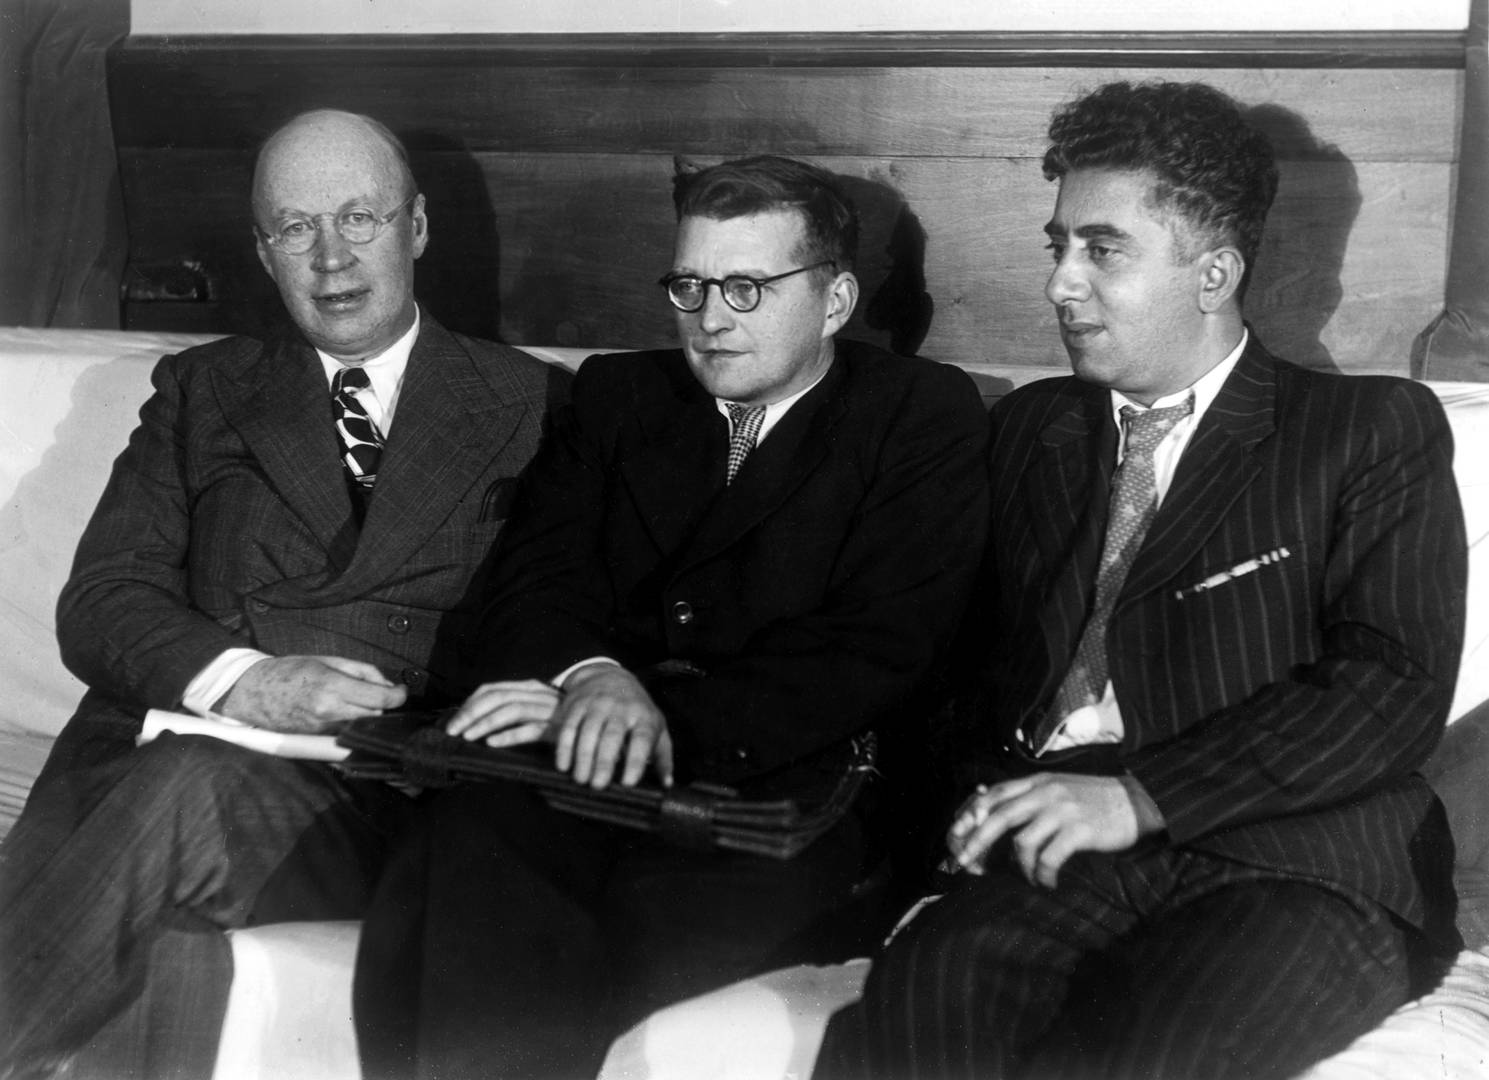 С. Прокофьев, Д. Шостакович и А. Хачатурян, 1945